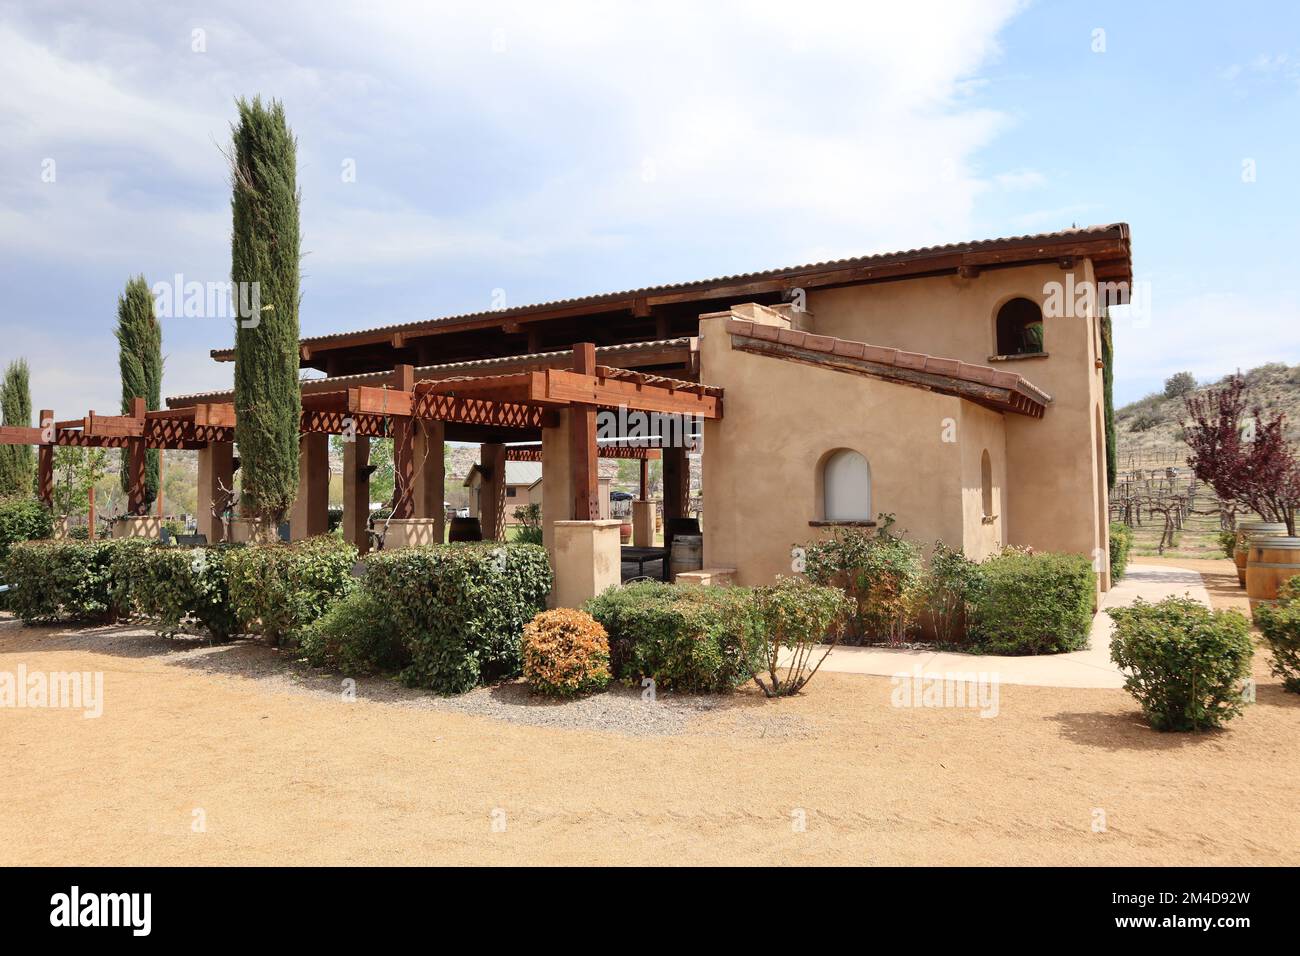 Ein Blick auf ein Weingut im toskanischen Stil in Arizona, USA Stockfoto